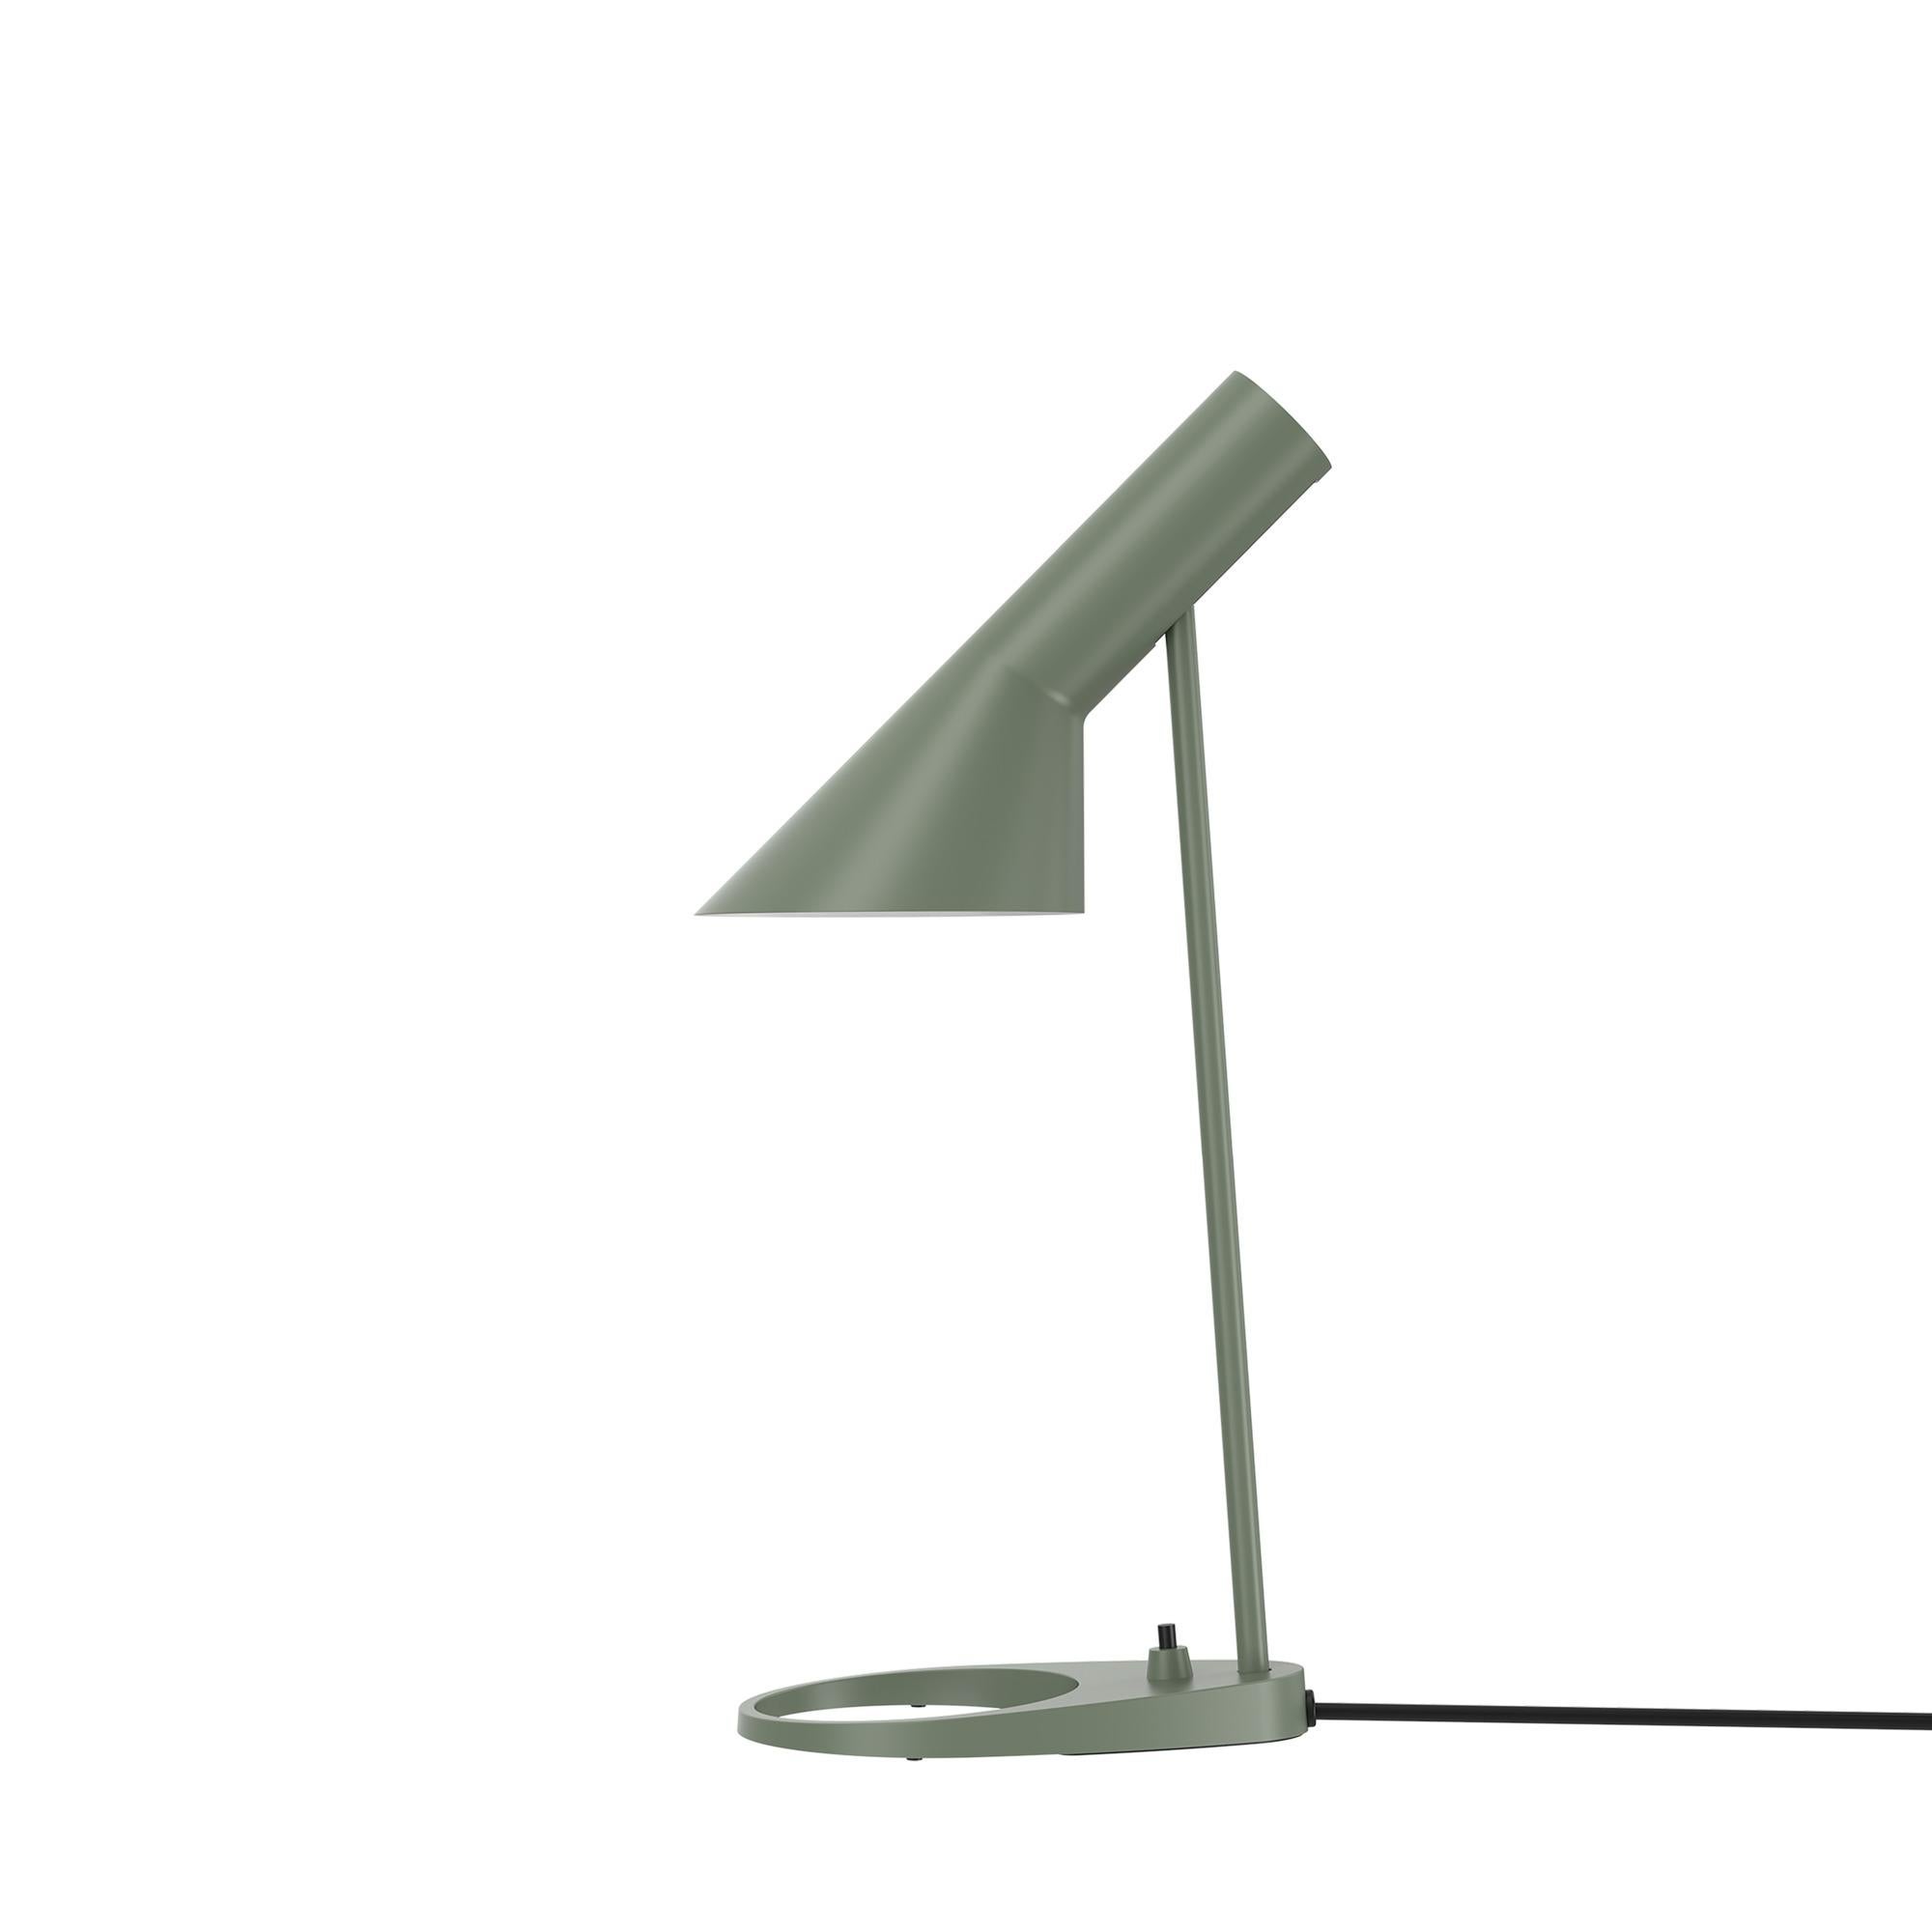 Lampe de table 'AJ Mini' de Arne Jacobsen pour Louis Poulsen.

La série AJ faisait partie de la collection de luminaires que le célèbre designer danois Arne Jacobsen a créée pour le premier hôtel SAS Royal en 1957. Aujourd'hui, ses designs de